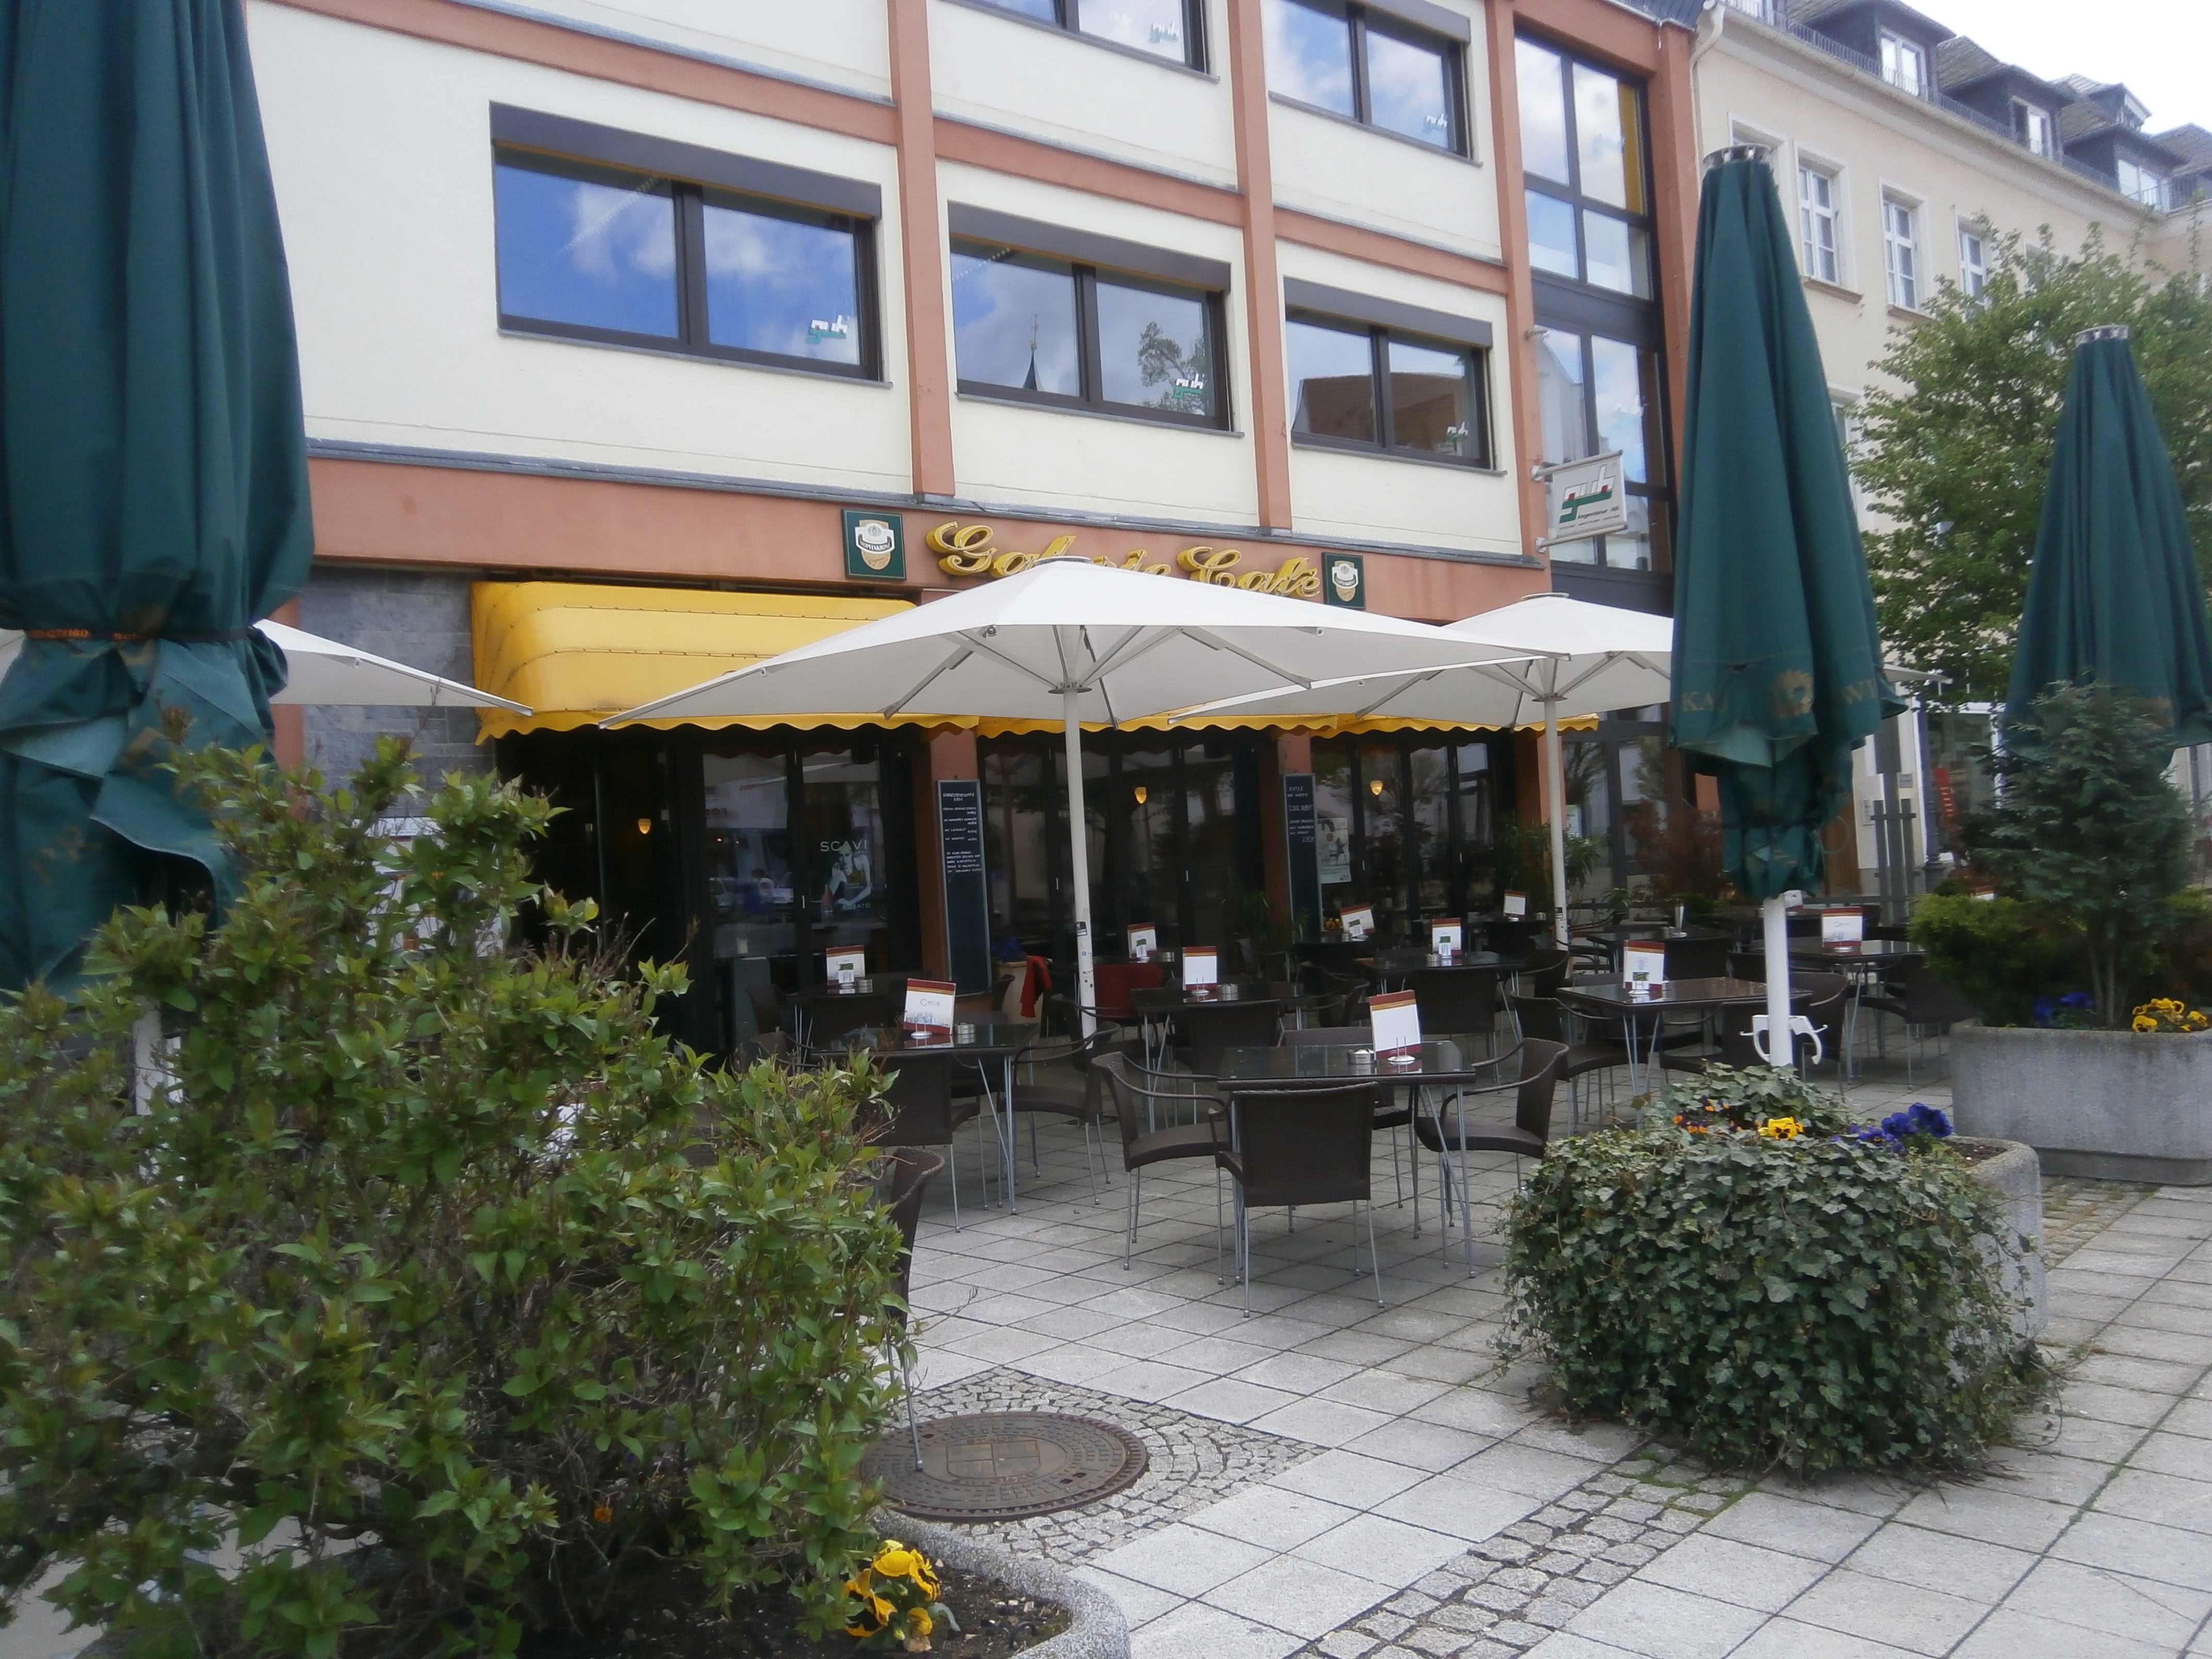 Bild 1 Restaurant-Galerie-Cafe Inh. Uwe Neumann in Zwickau